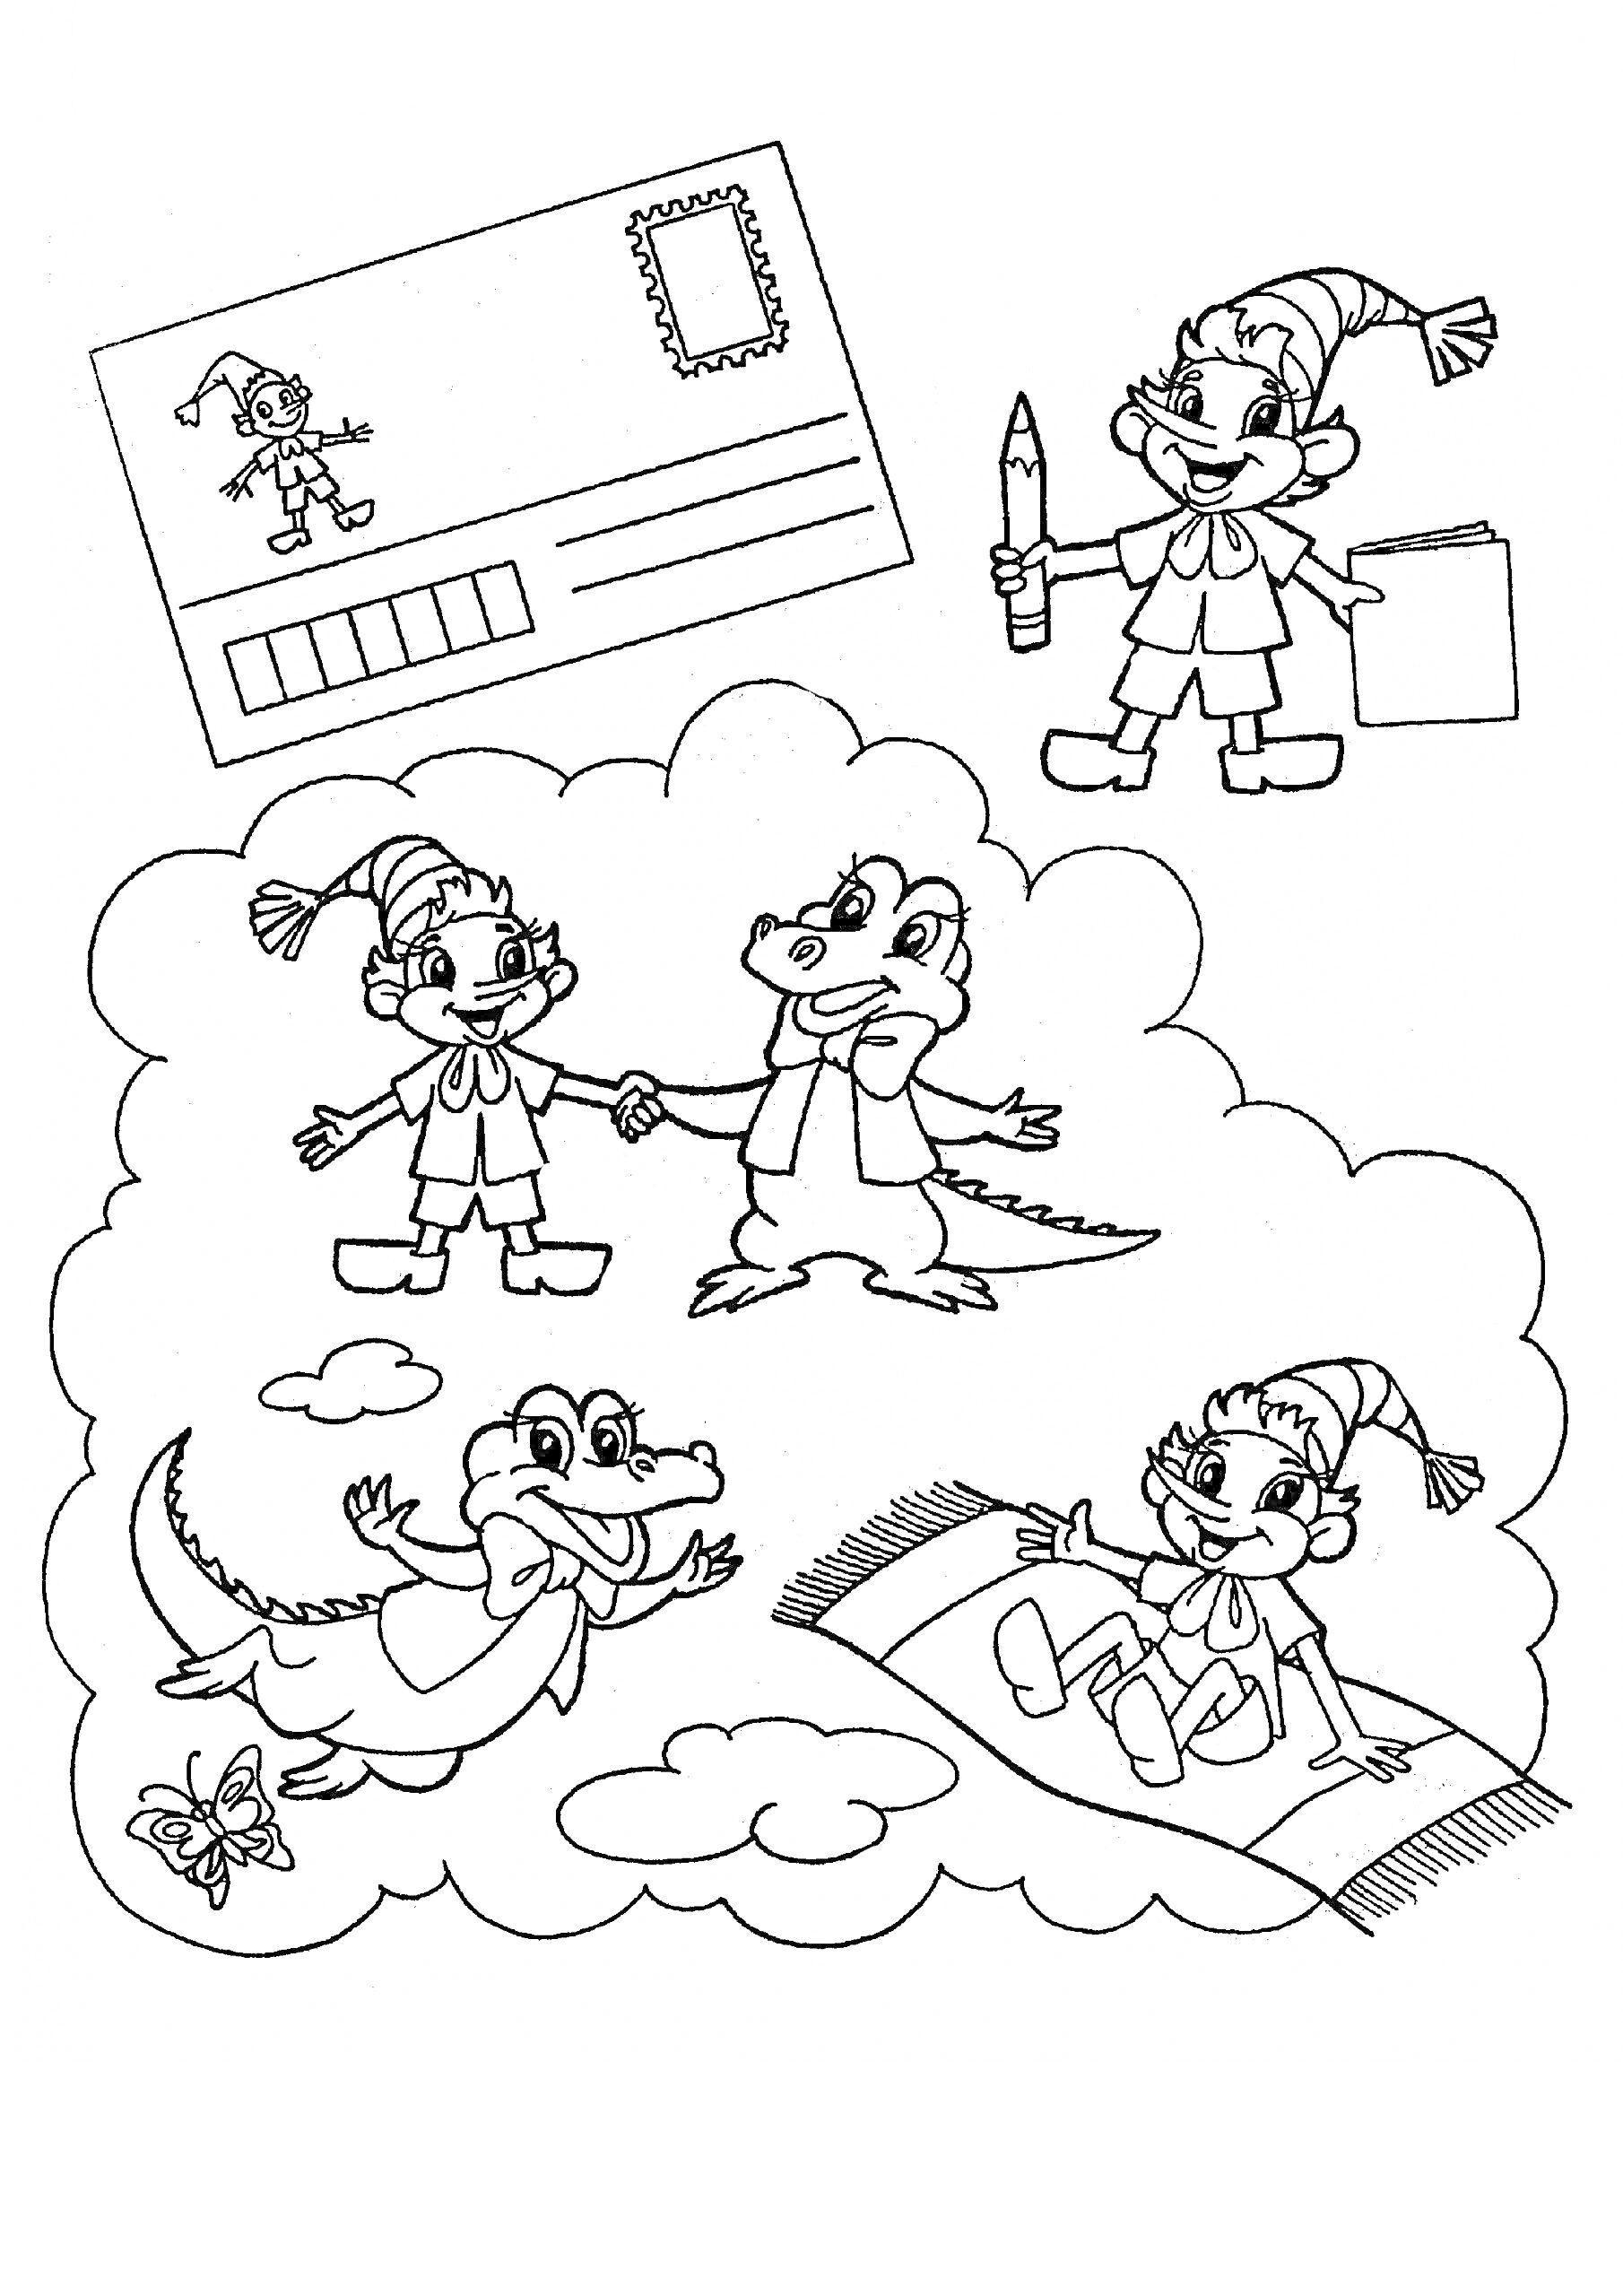 Раскраска Дети-гномы и крокодилы: письмо, карандаш, книга, пара в танце, ползущий крокодил, ребёнок едет на ковре